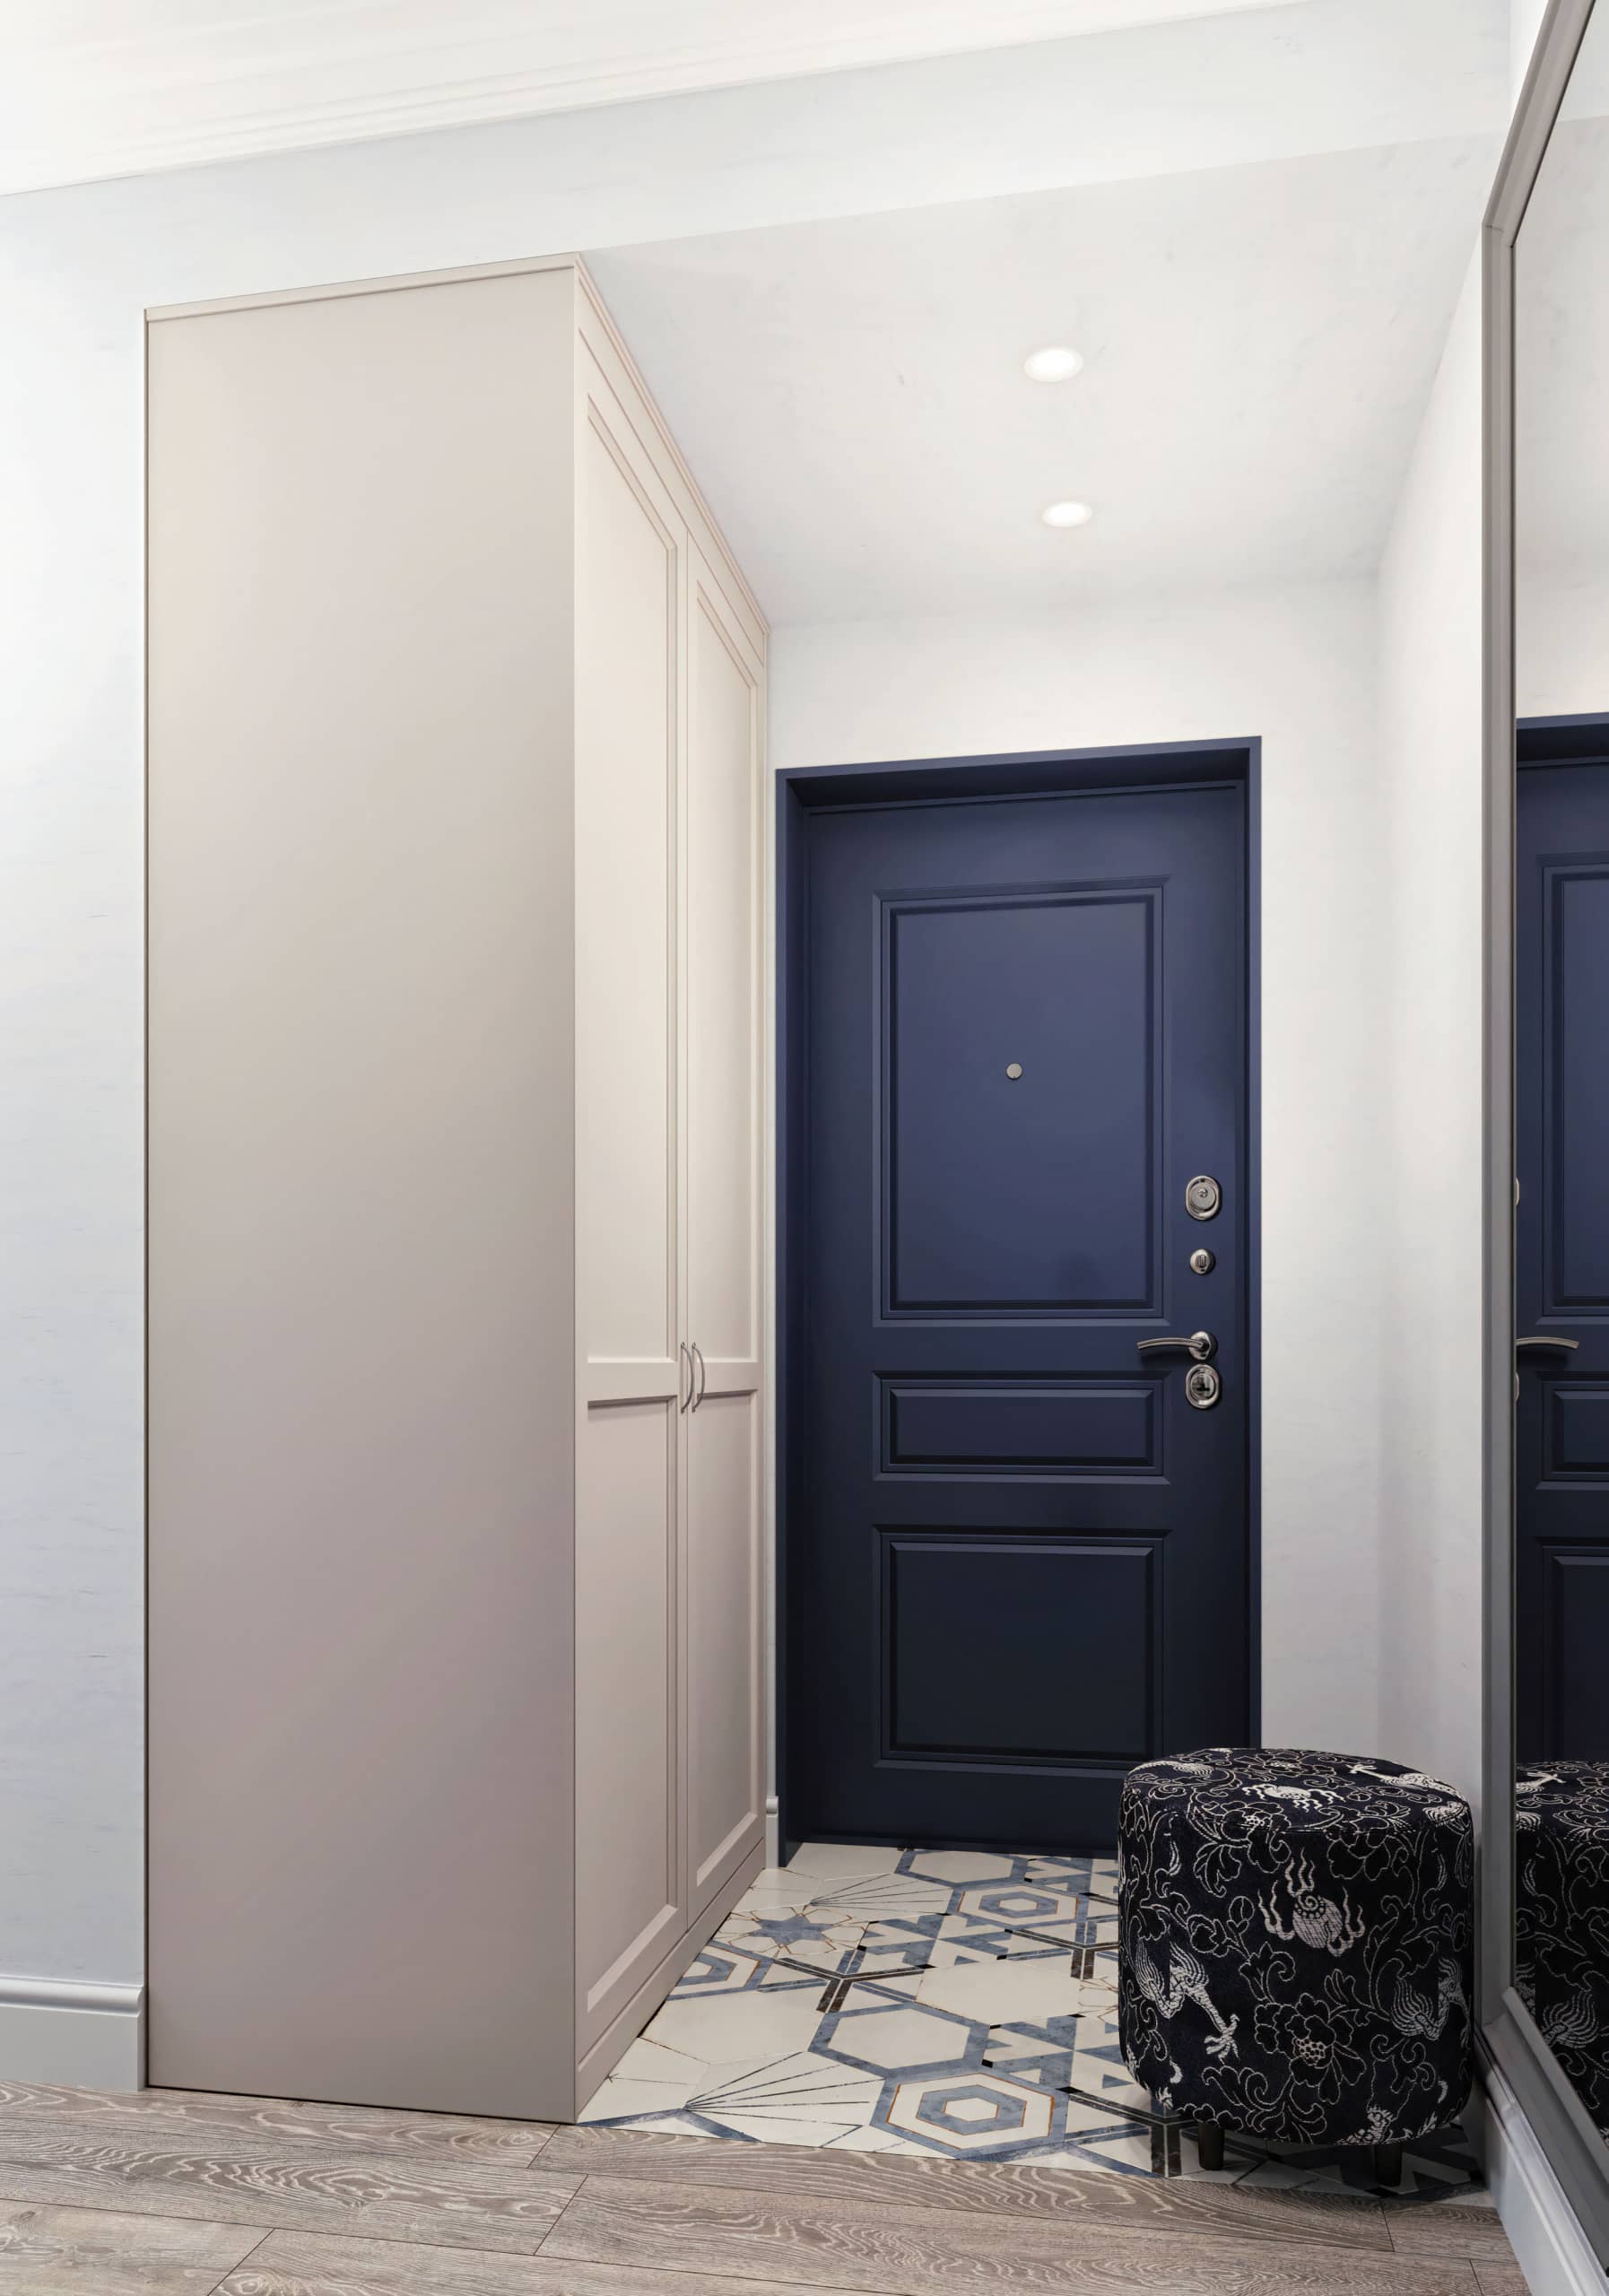 Для контраста в зону прихожей внесли синий цвет в отделке входной двери